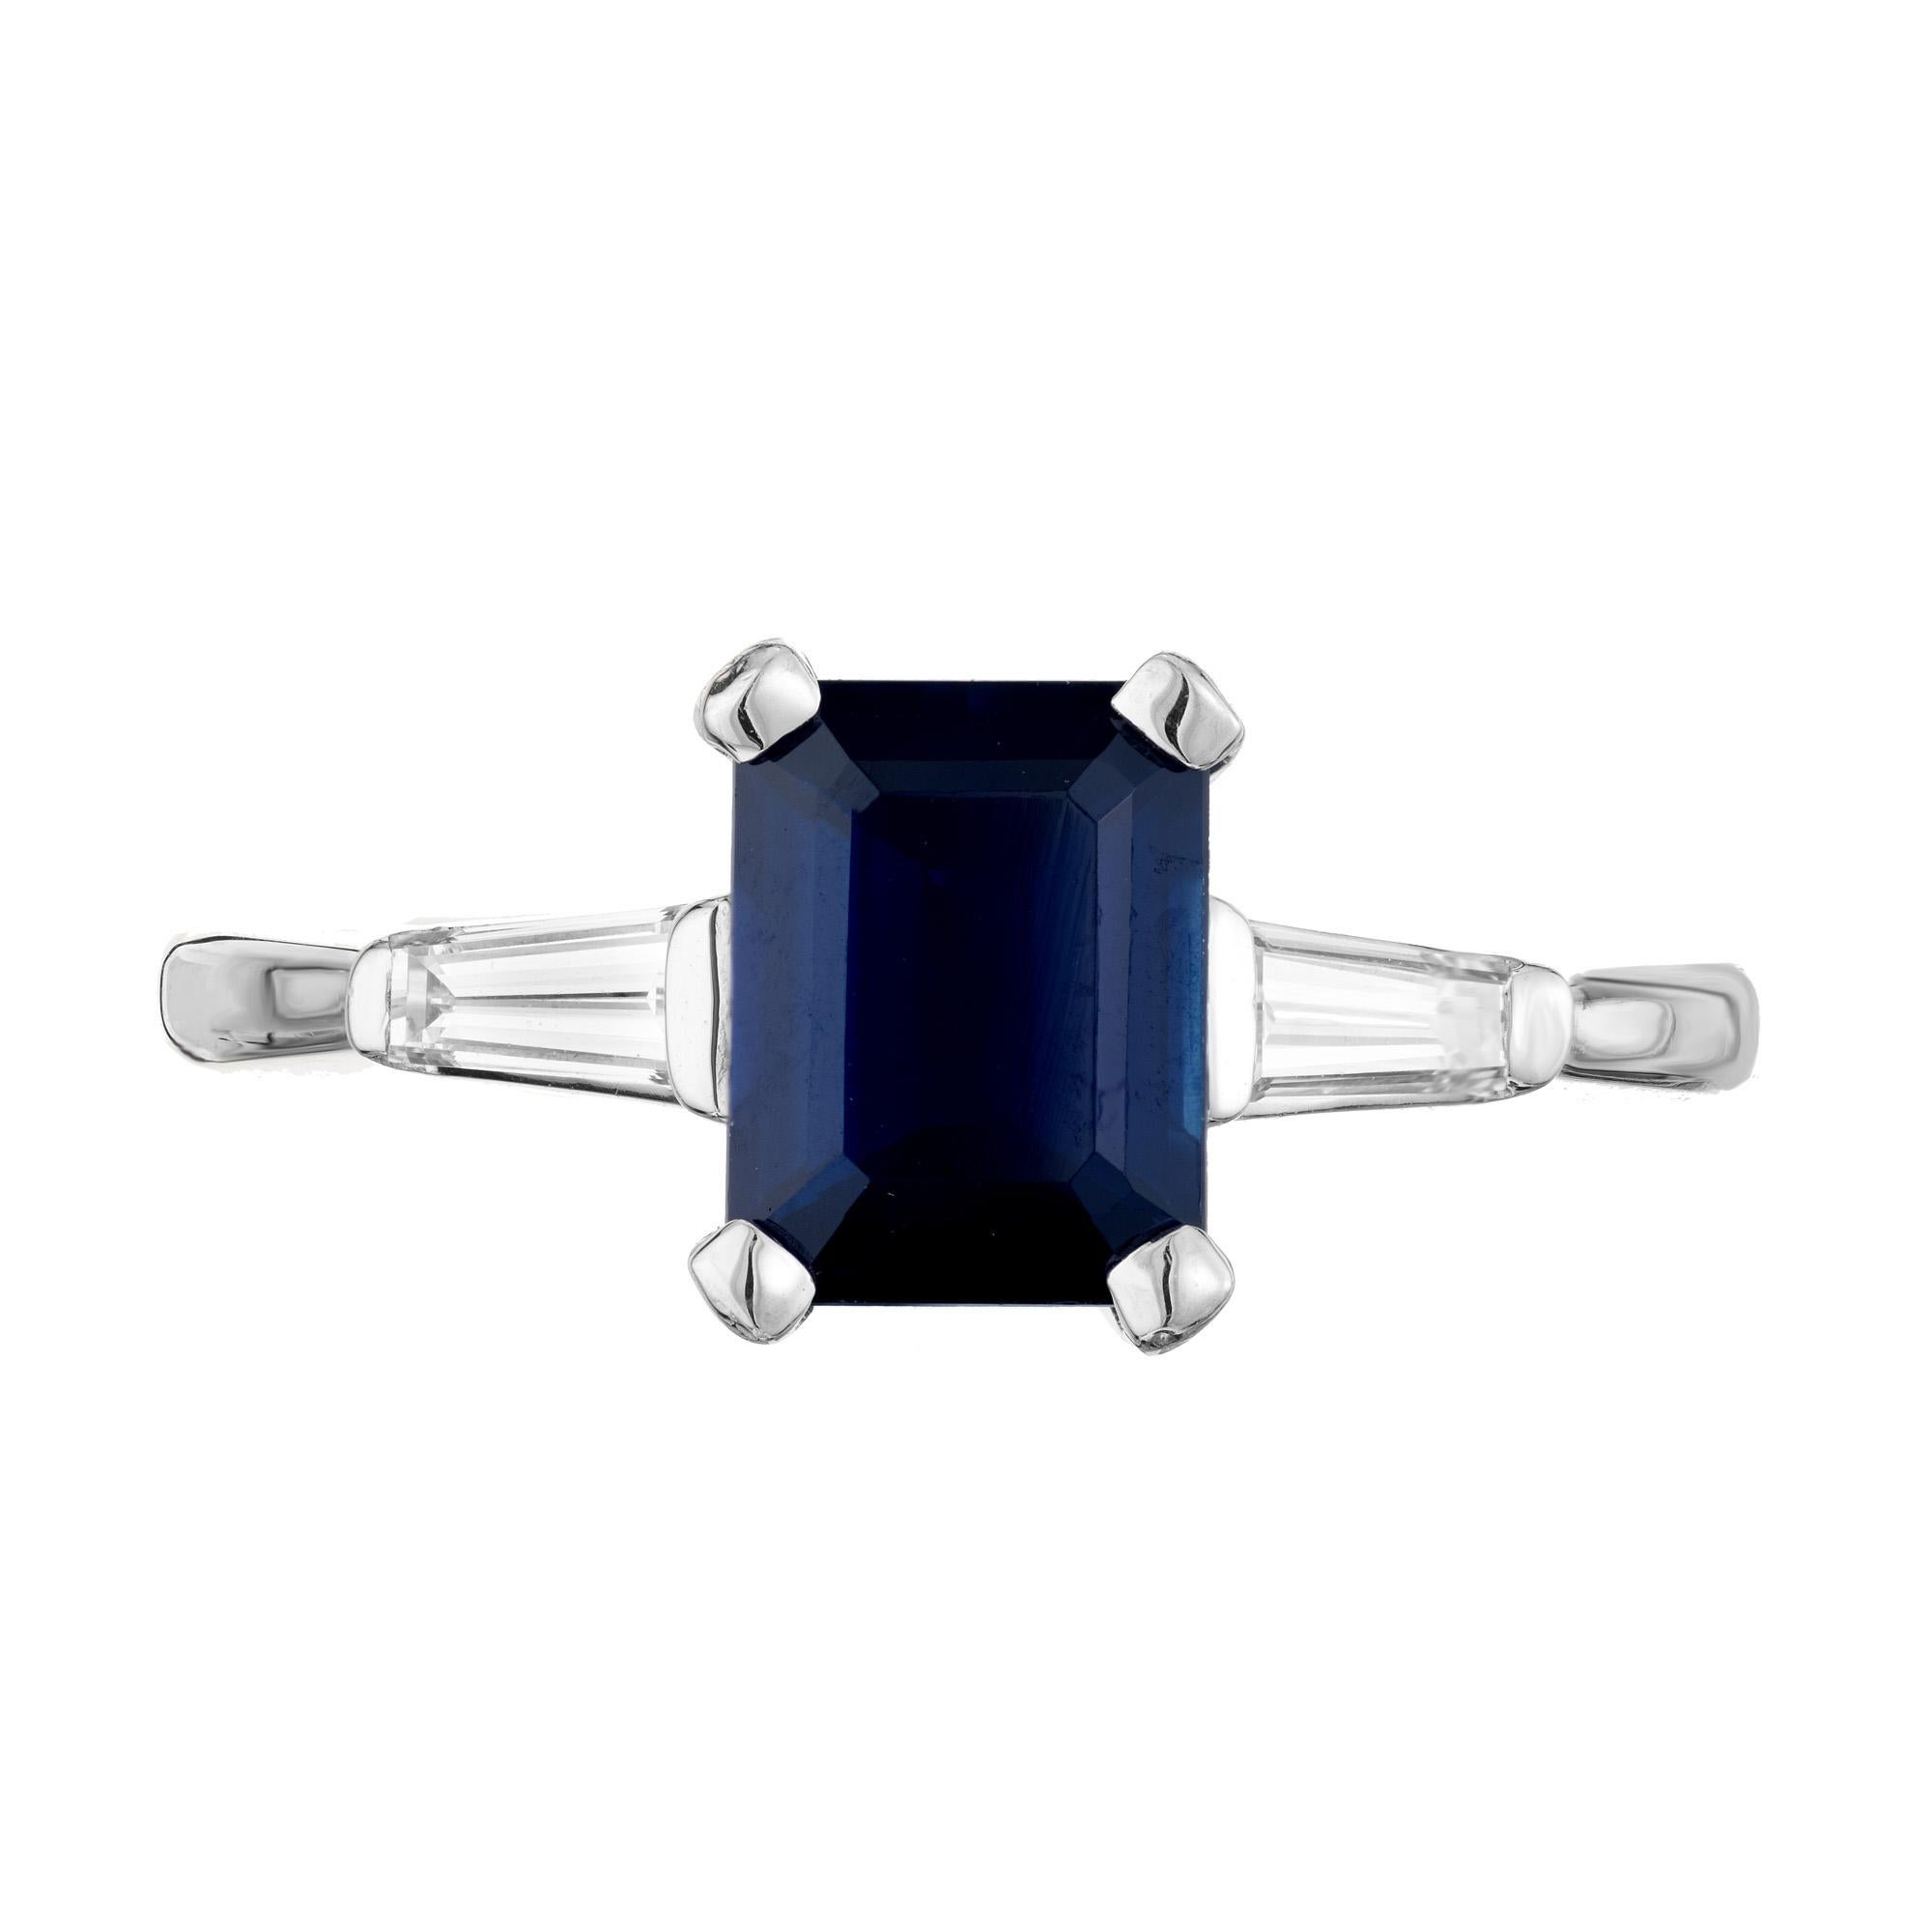 Verlobungsring mit Saphir und Diamant. GIA-zertifizierter achteckiger blauer Saphir mit einem Gewicht von 1,80 Karat, gefasst in einer Platinfassung mit drei Steinen. Akzentuiert mit zwei spitz zulaufenden Baguette-Diamanten an der Seite. Der Saphir